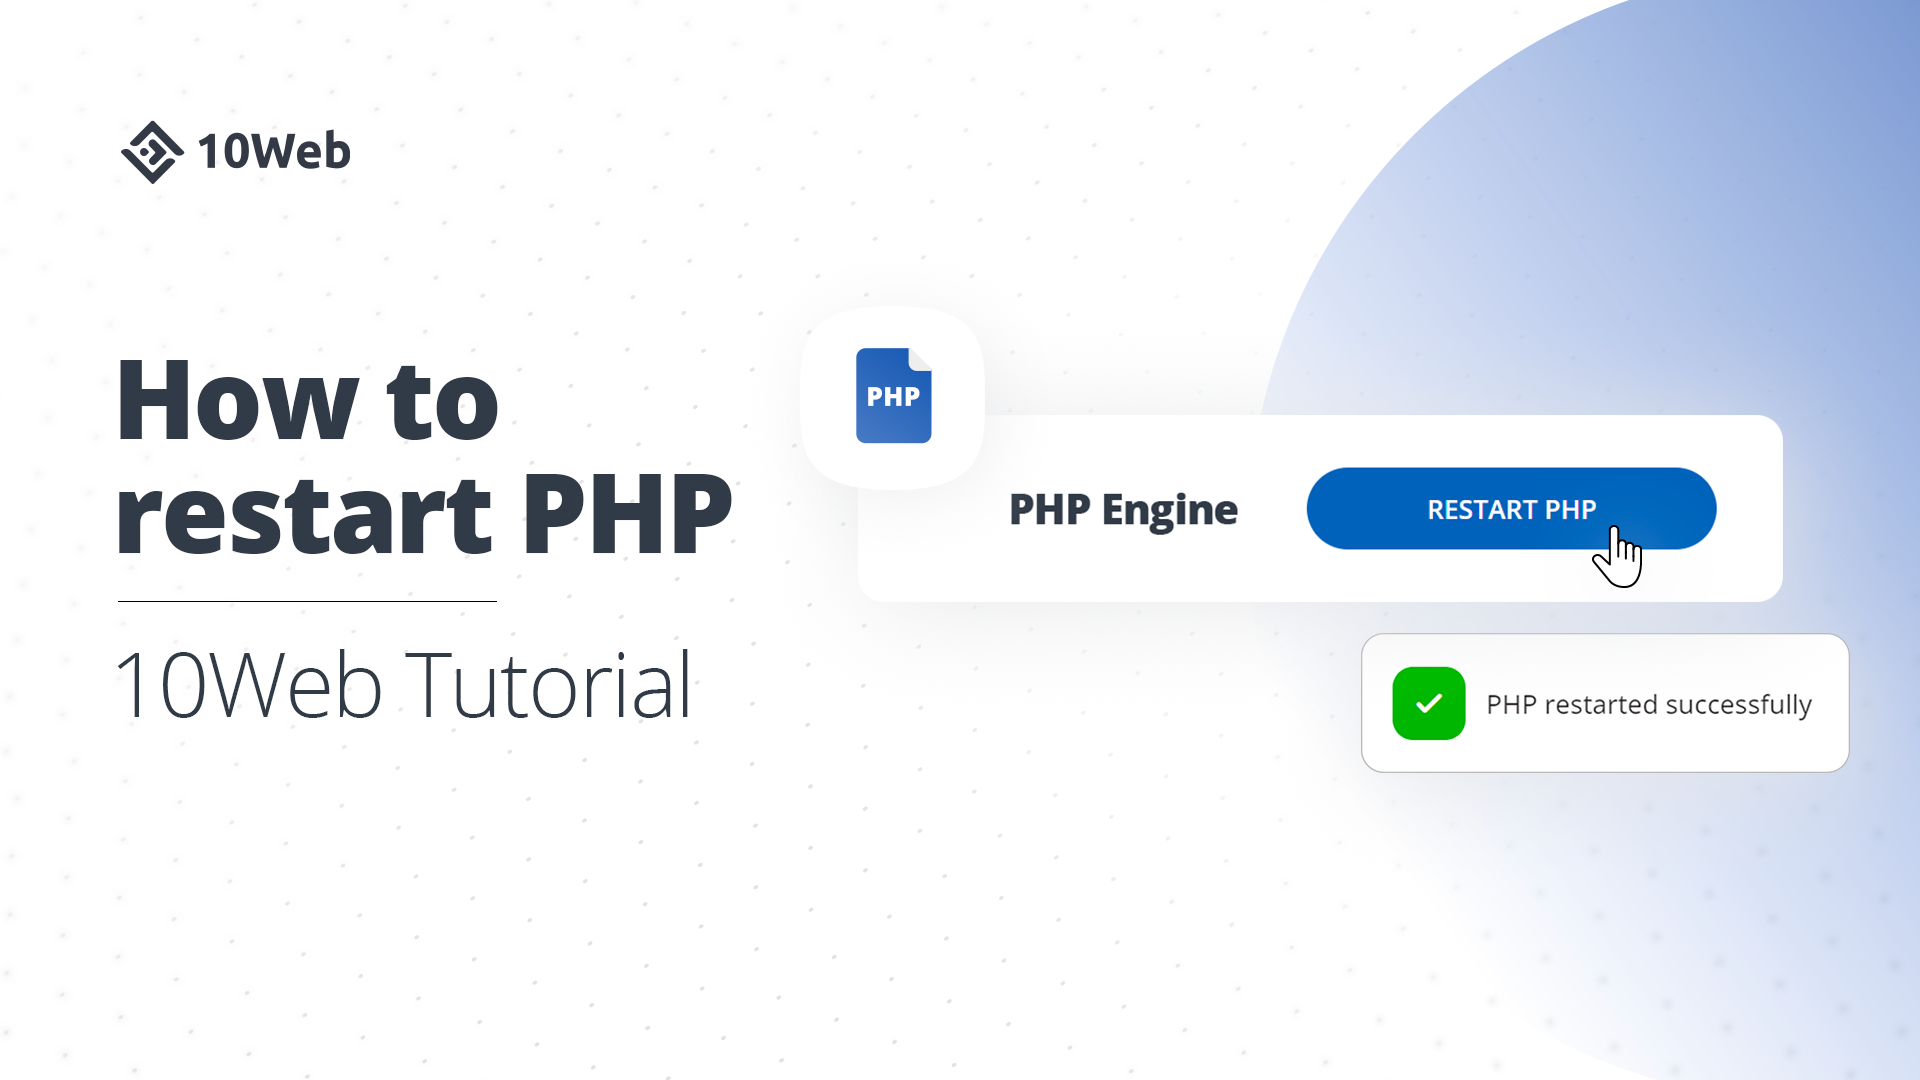 restart-PHP.png